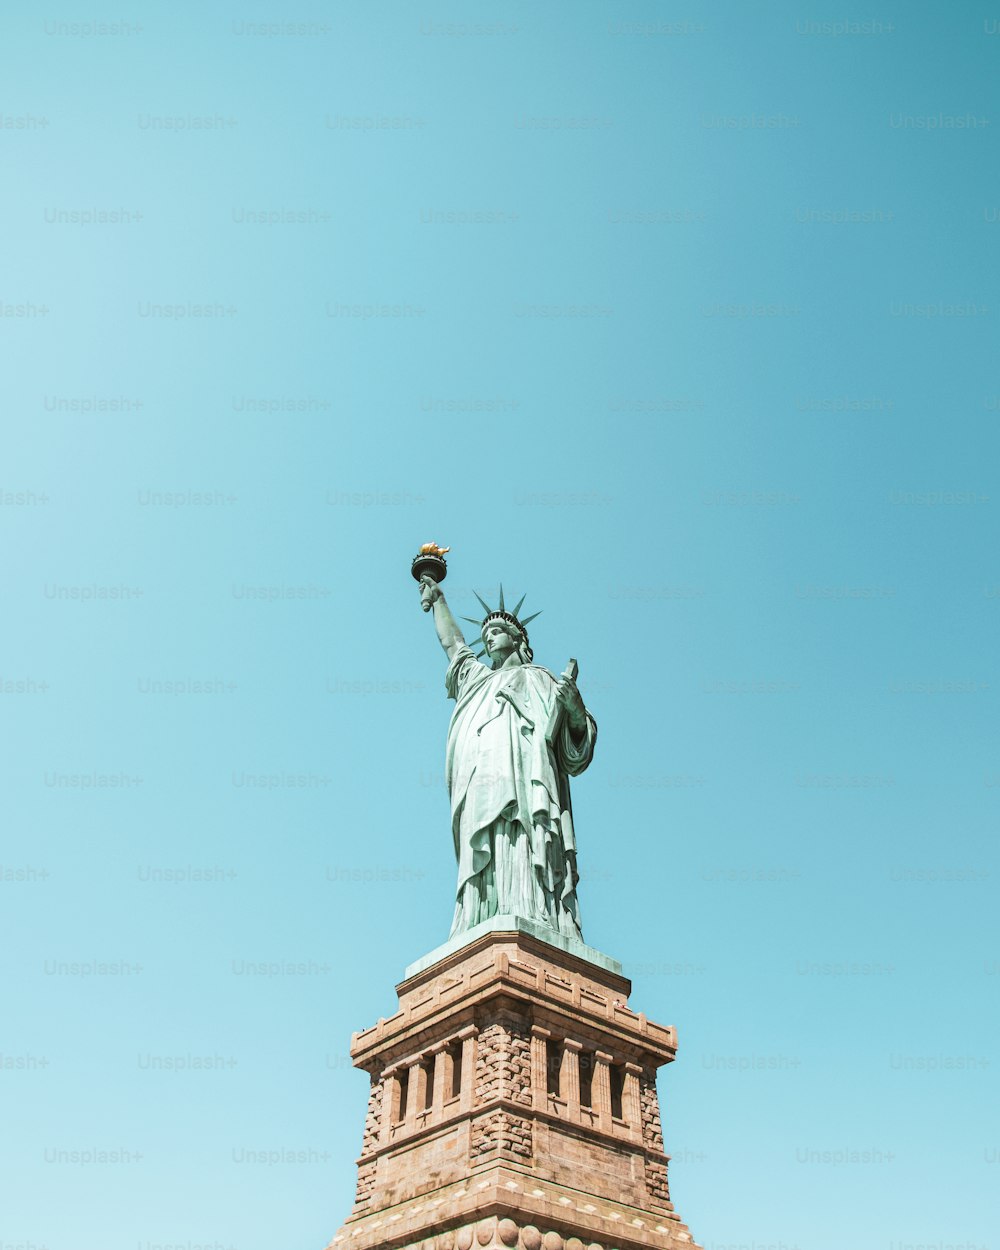 La Statua della Libertà è mostrata contro un cielo blu